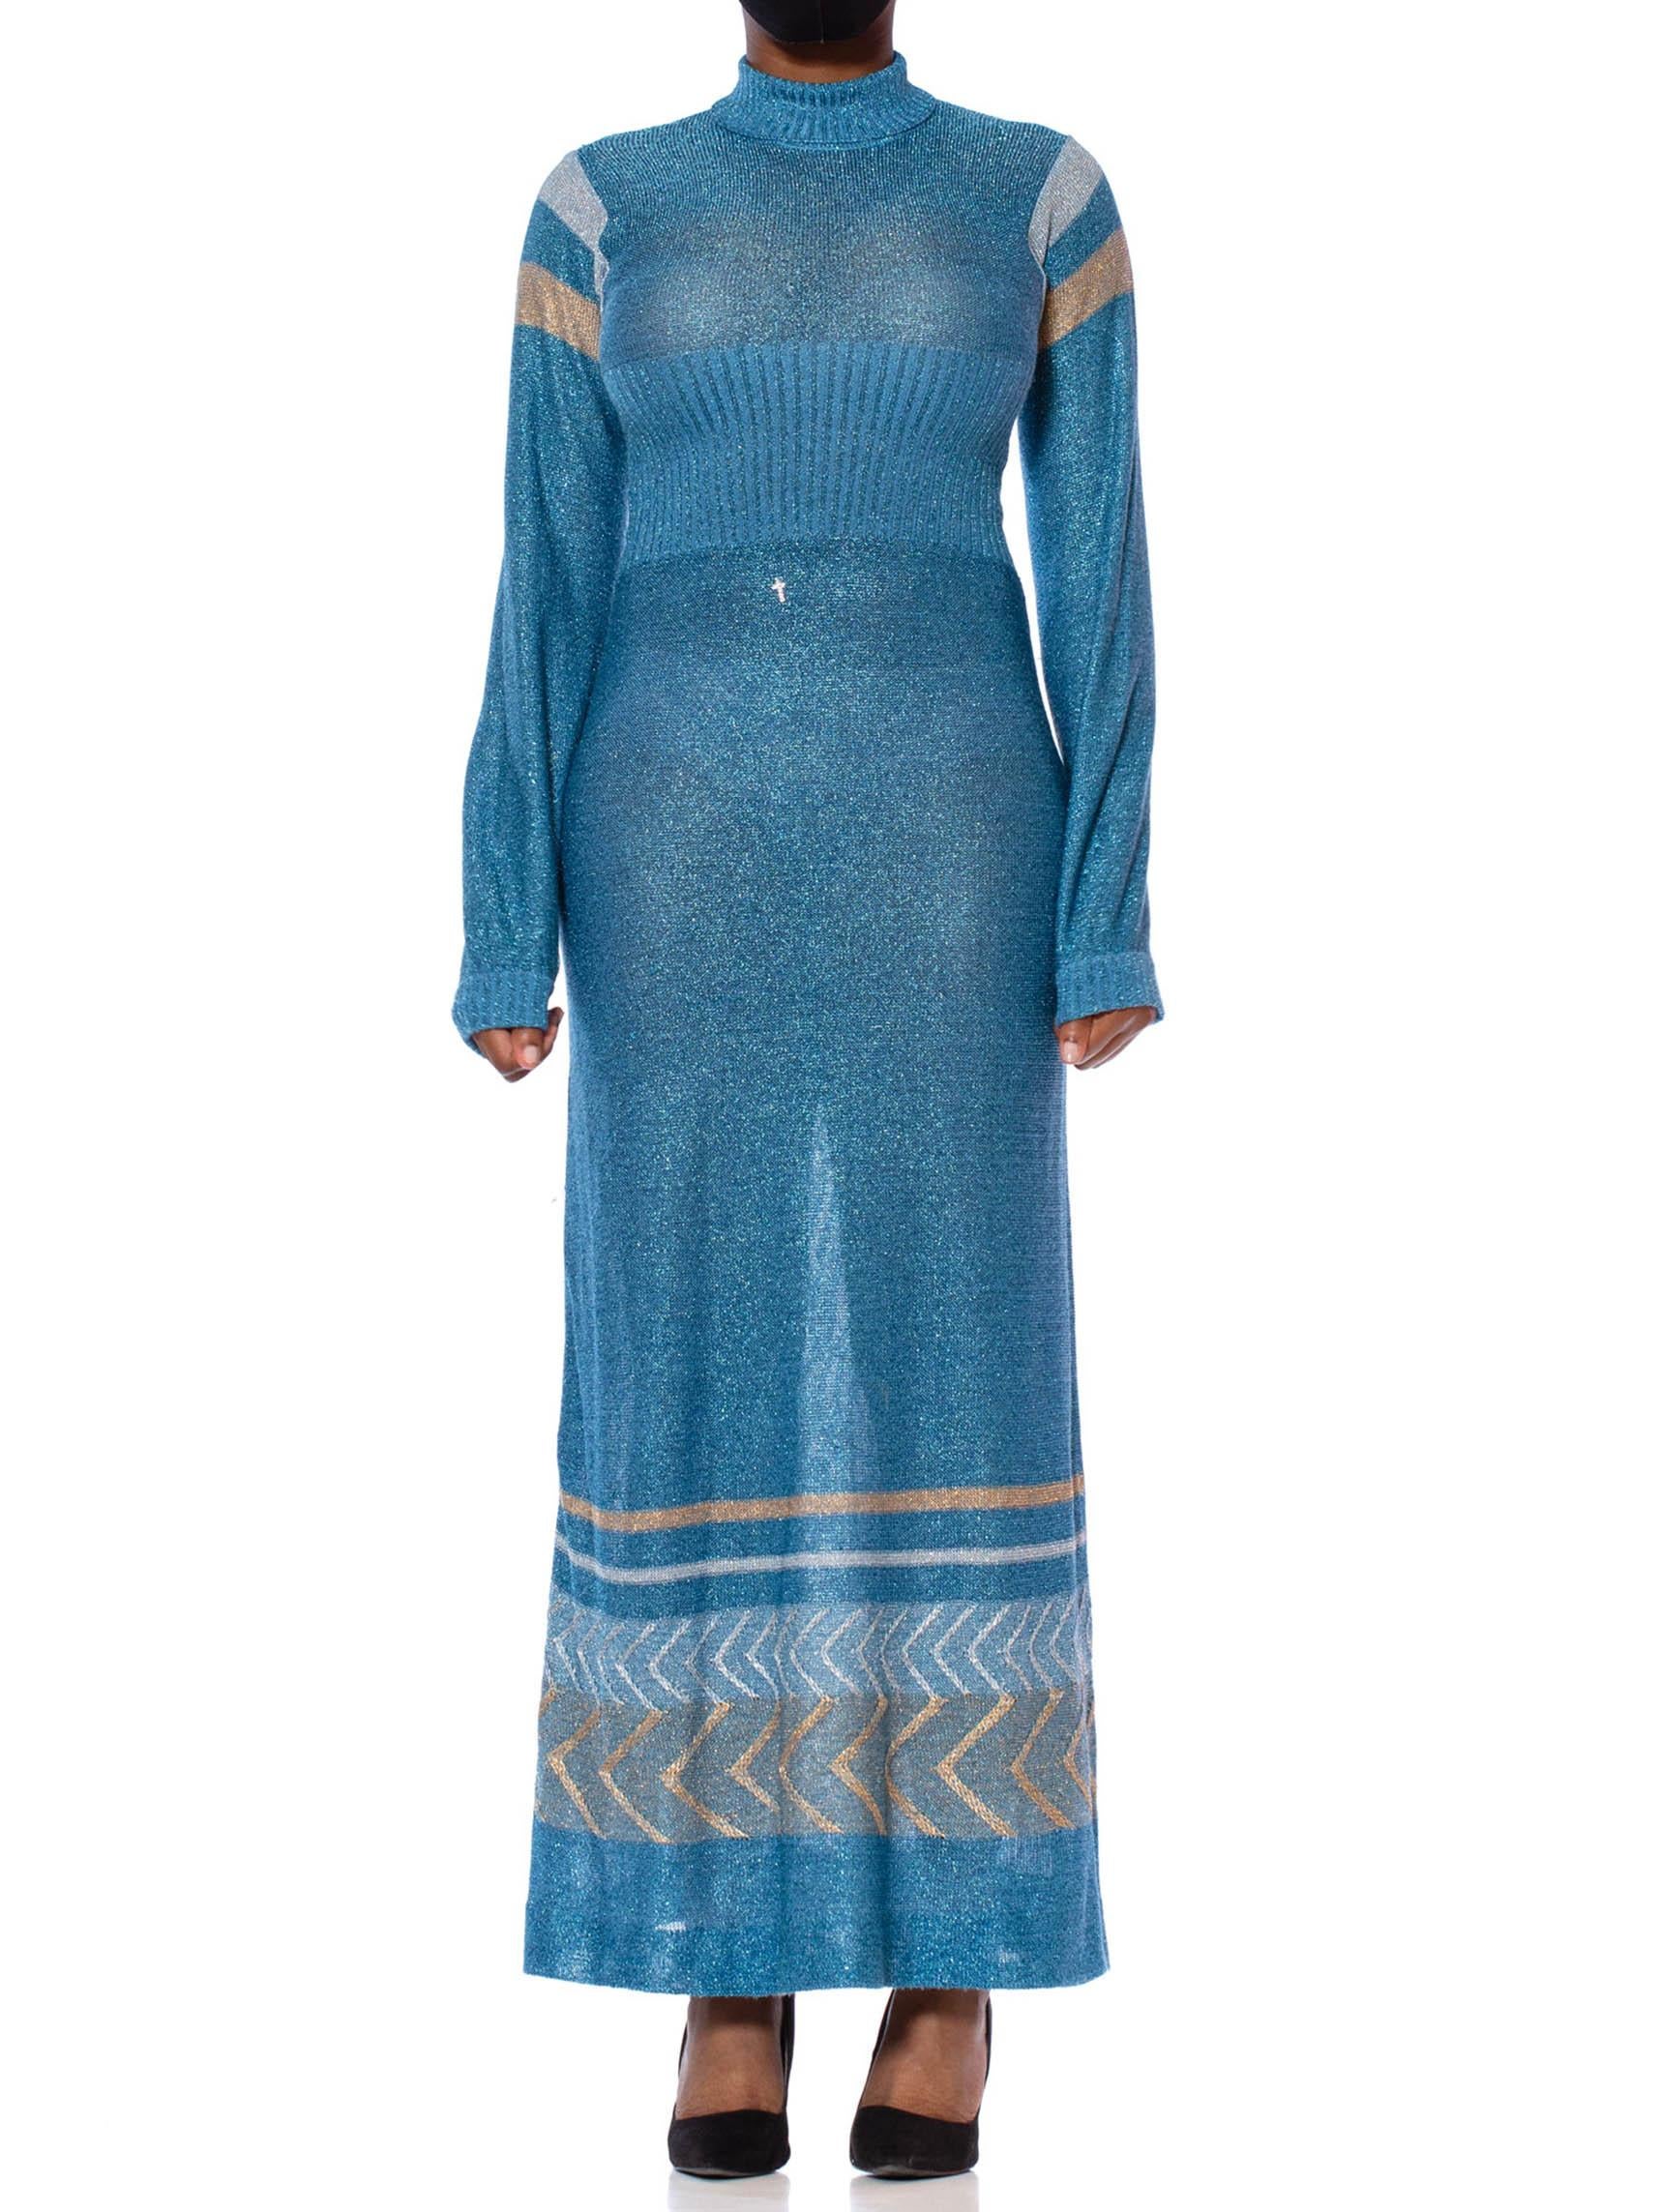 robe longue à manches longues en tricot poly/Lurex bleu aigue-marine des années 1970 avec bordure déco or et argent